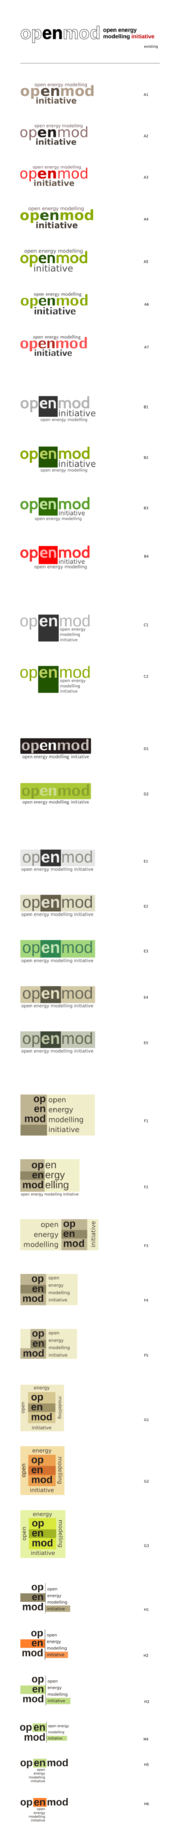 Openmod-logo-loop-one.885x9058.png